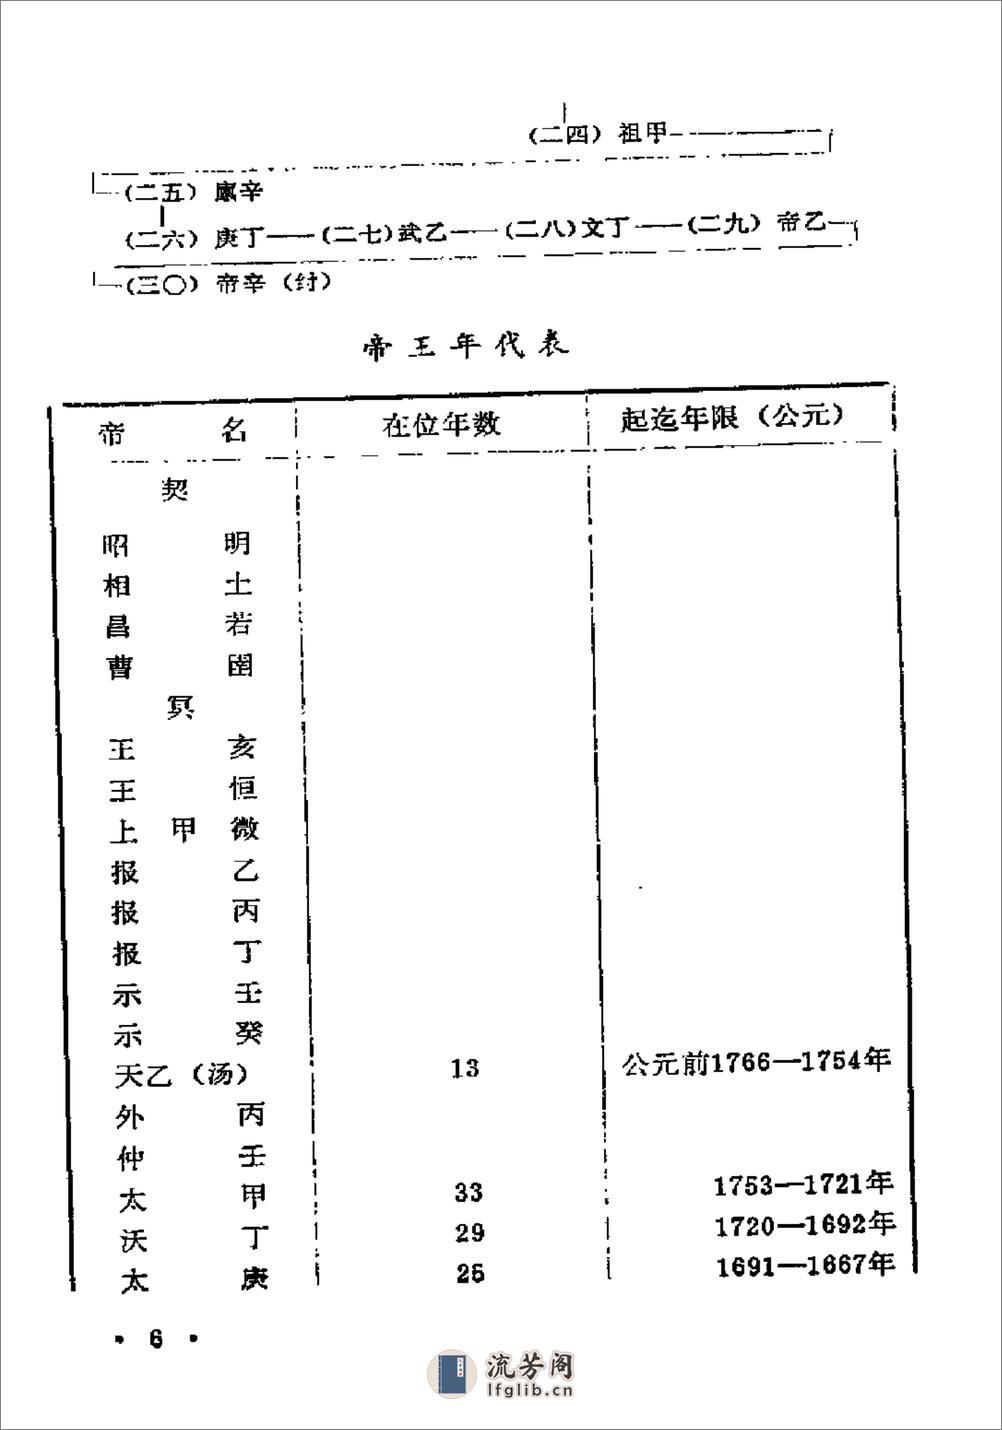 中国历史纪年简表·陈作良·中央党校1985 - 第19页预览图